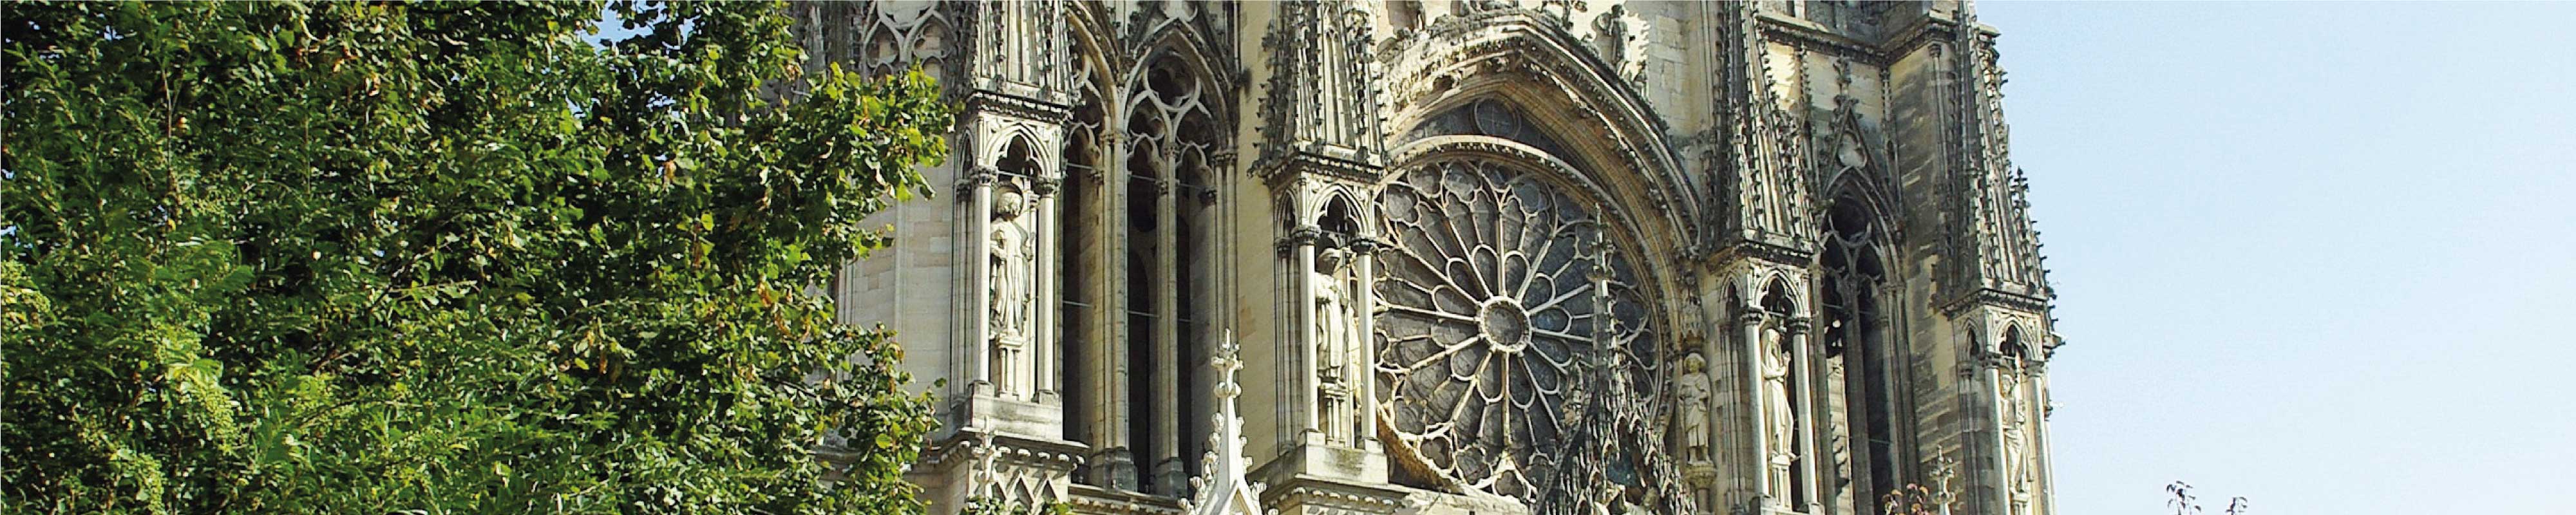 Consigne Bagage | Cathédrale de Reims à Reims - Nannybag